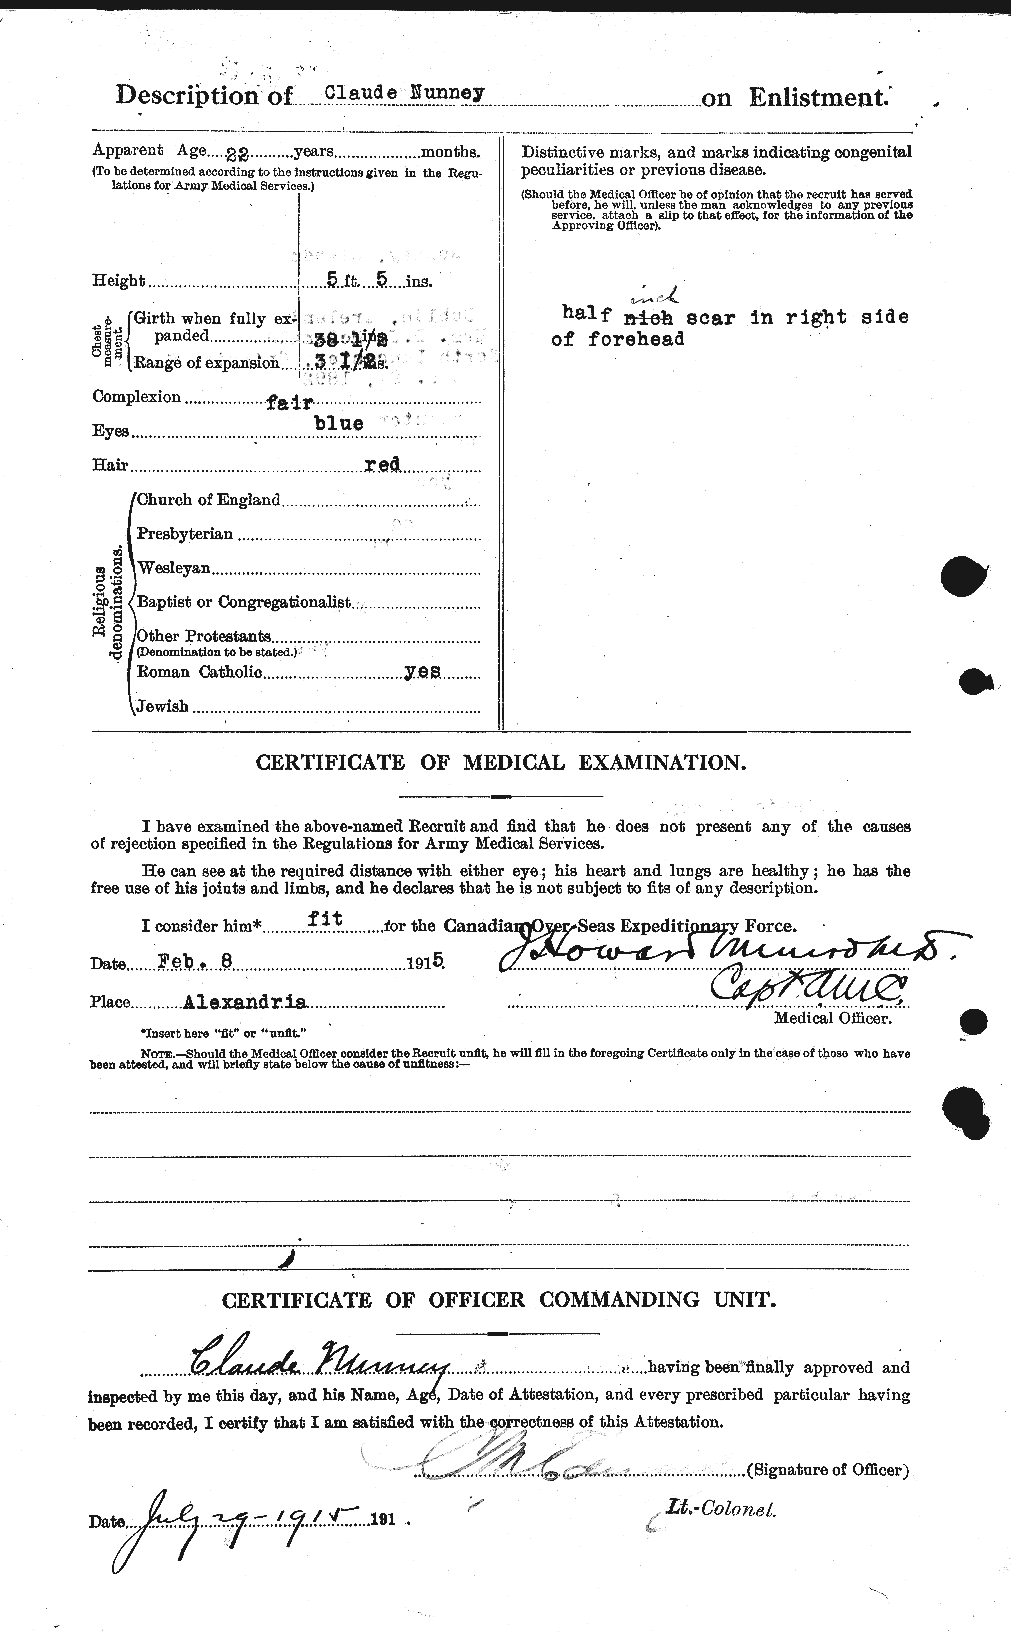 Dossiers du Personnel de la Première Guerre mondiale - CEC 206299b